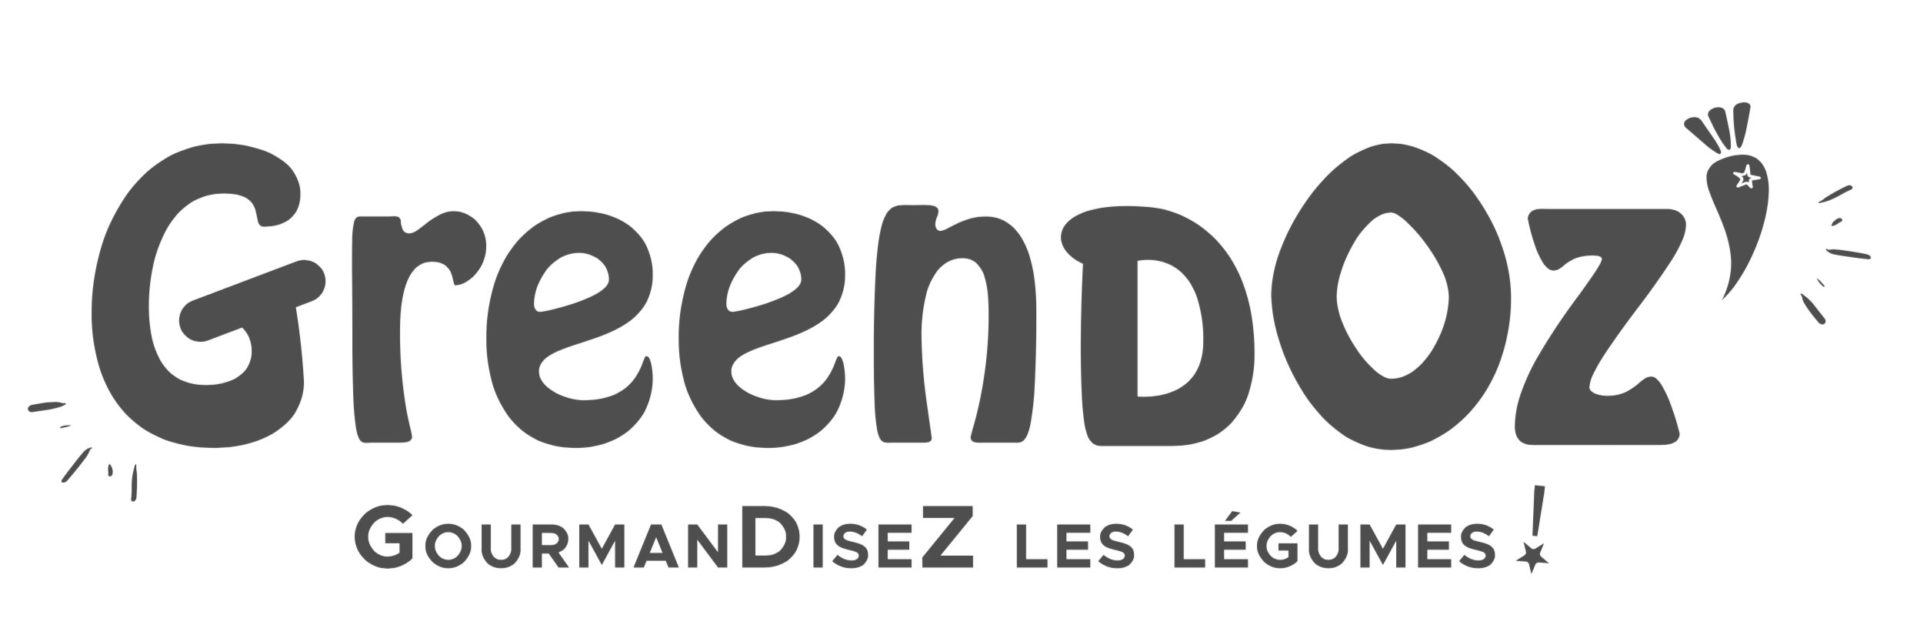 Greendoz logo noir et blanc partenaires